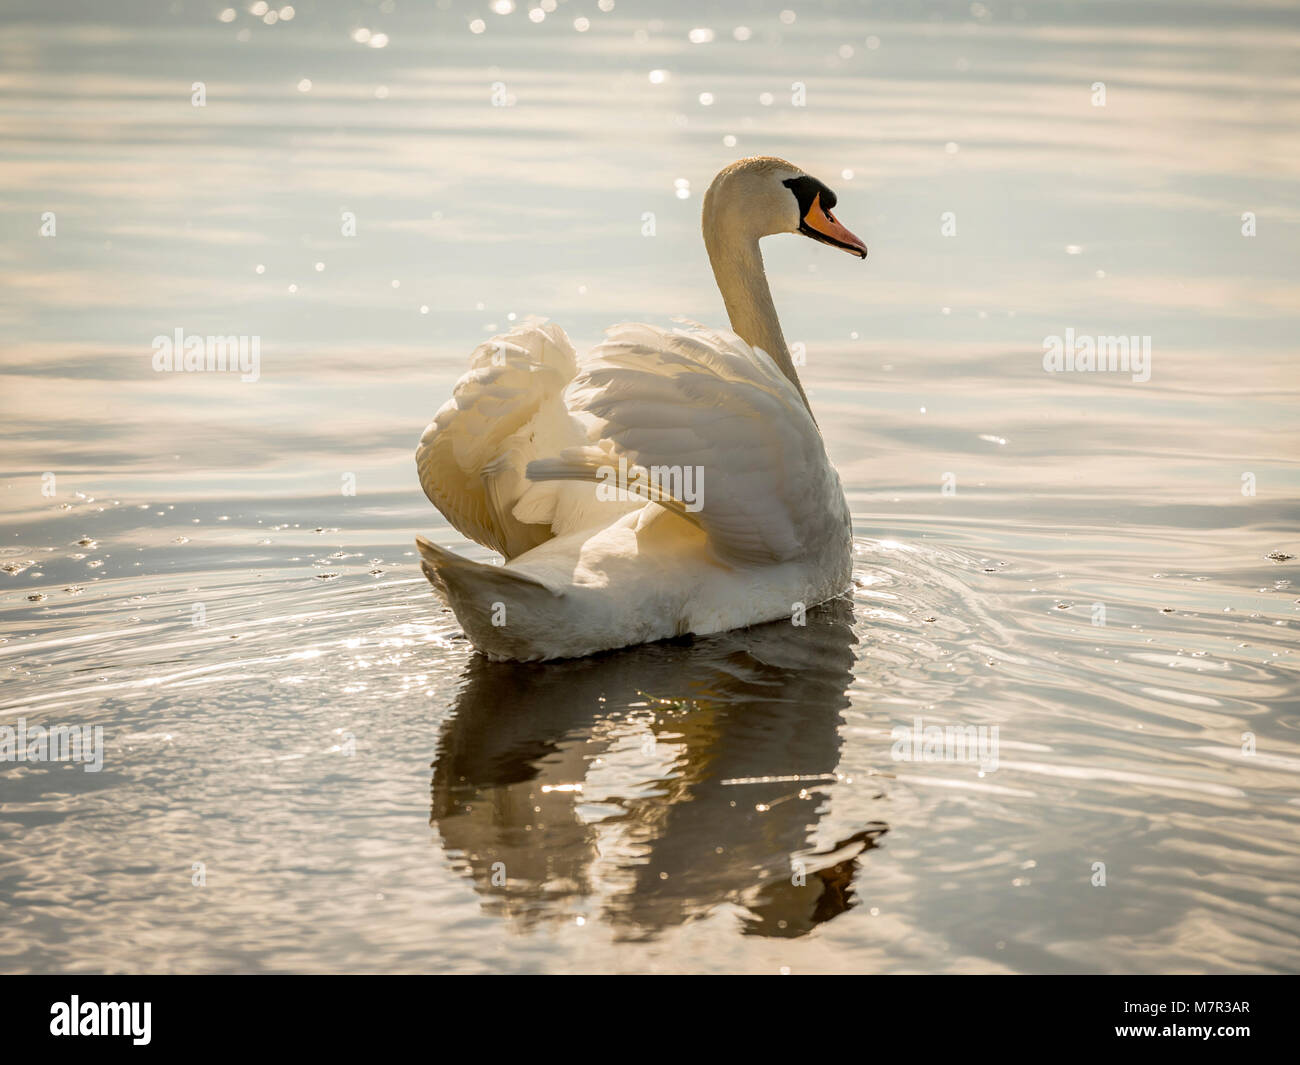 Beau Cygne tuberculé (Cygnus olor) baignée de lumière dorée , fanning ses ailes sur l'eau miroitante. Banque D'Images